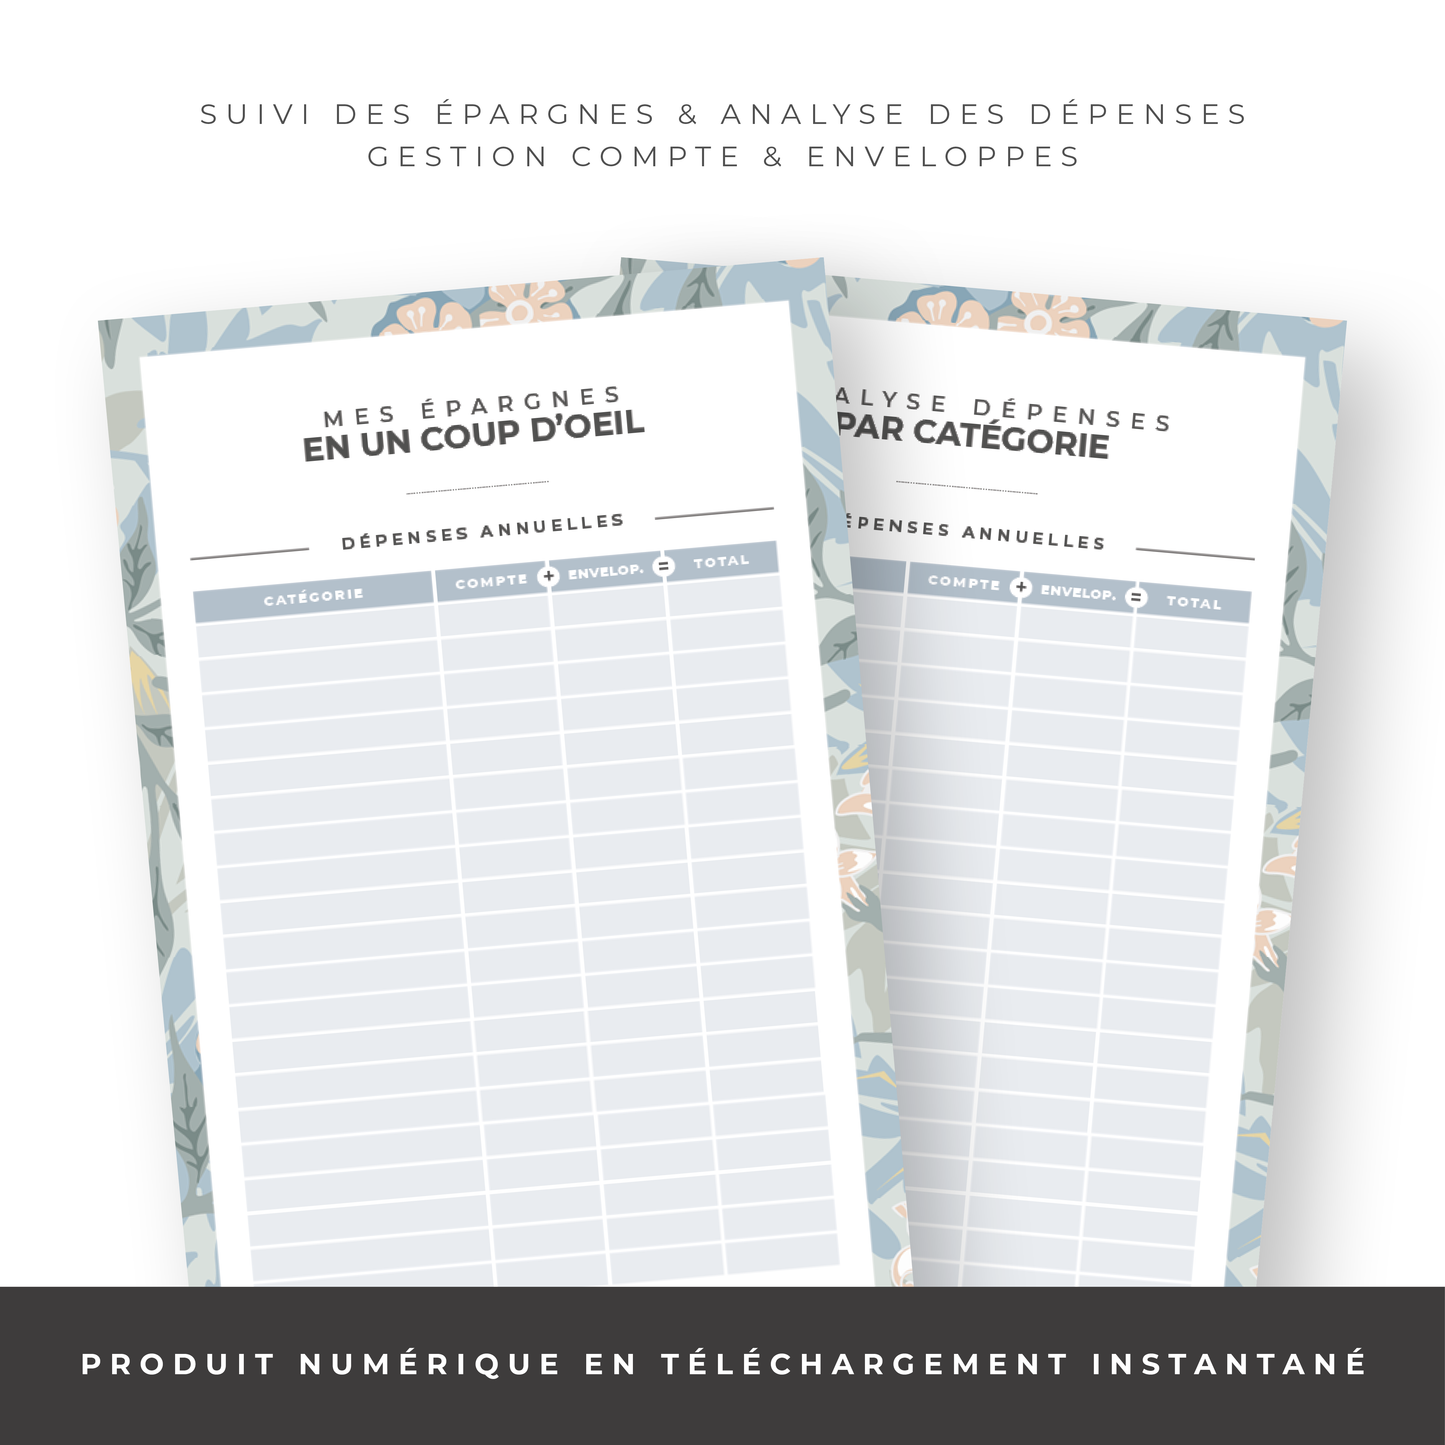 Kit Budget Planner Mini A6 - Floral (digital)